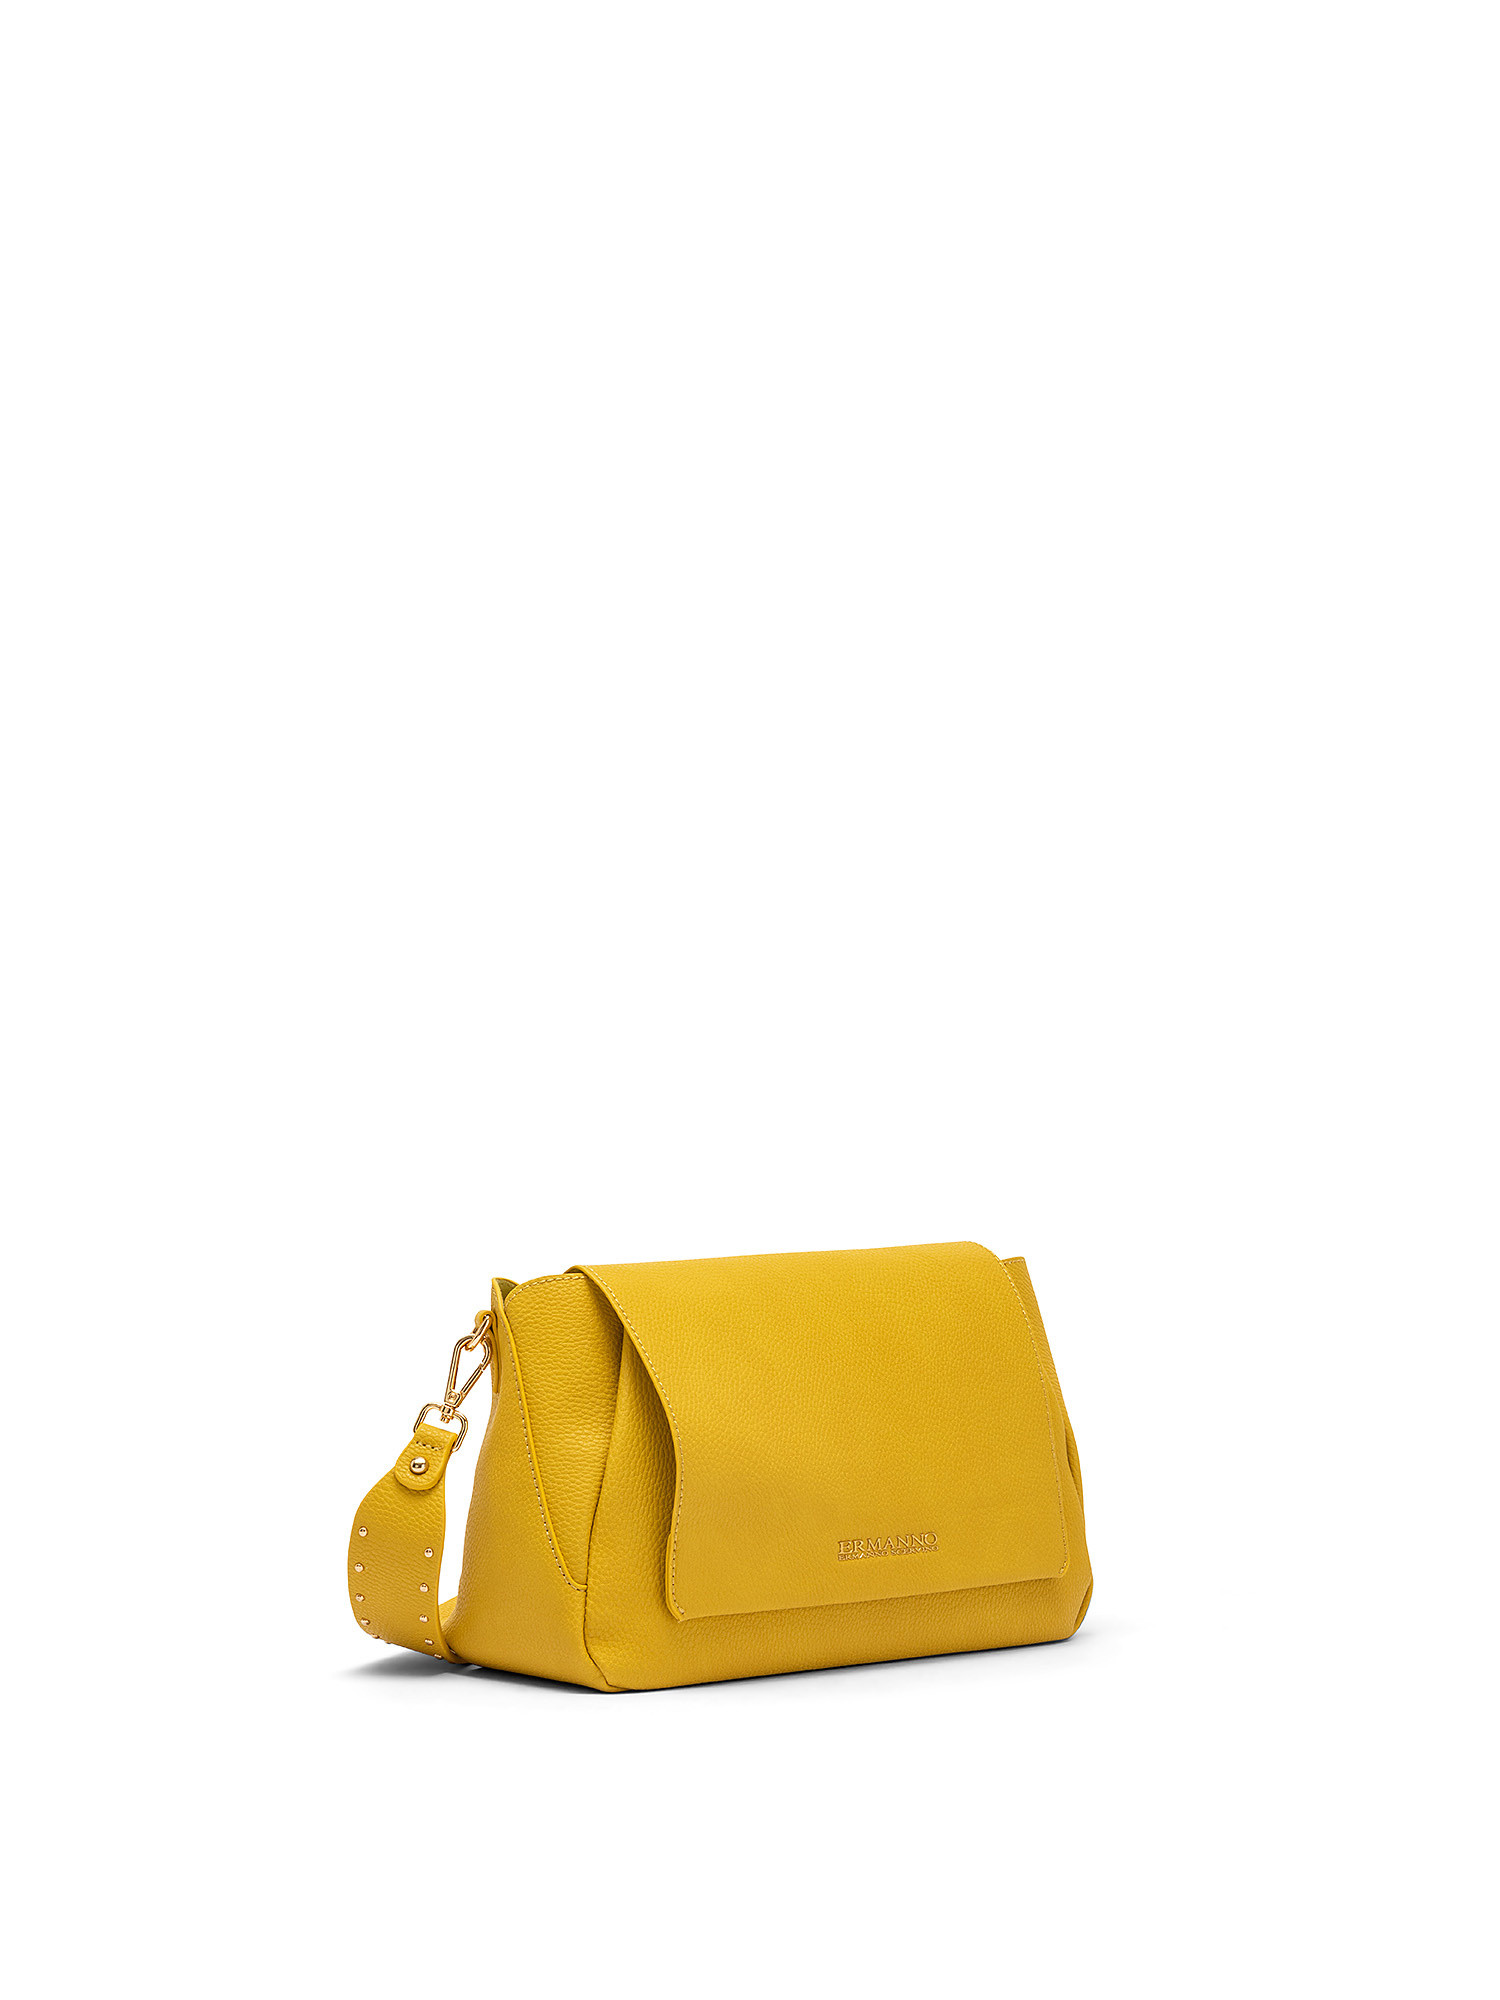 Mirella Flap Bag, Yellow, large image number 1